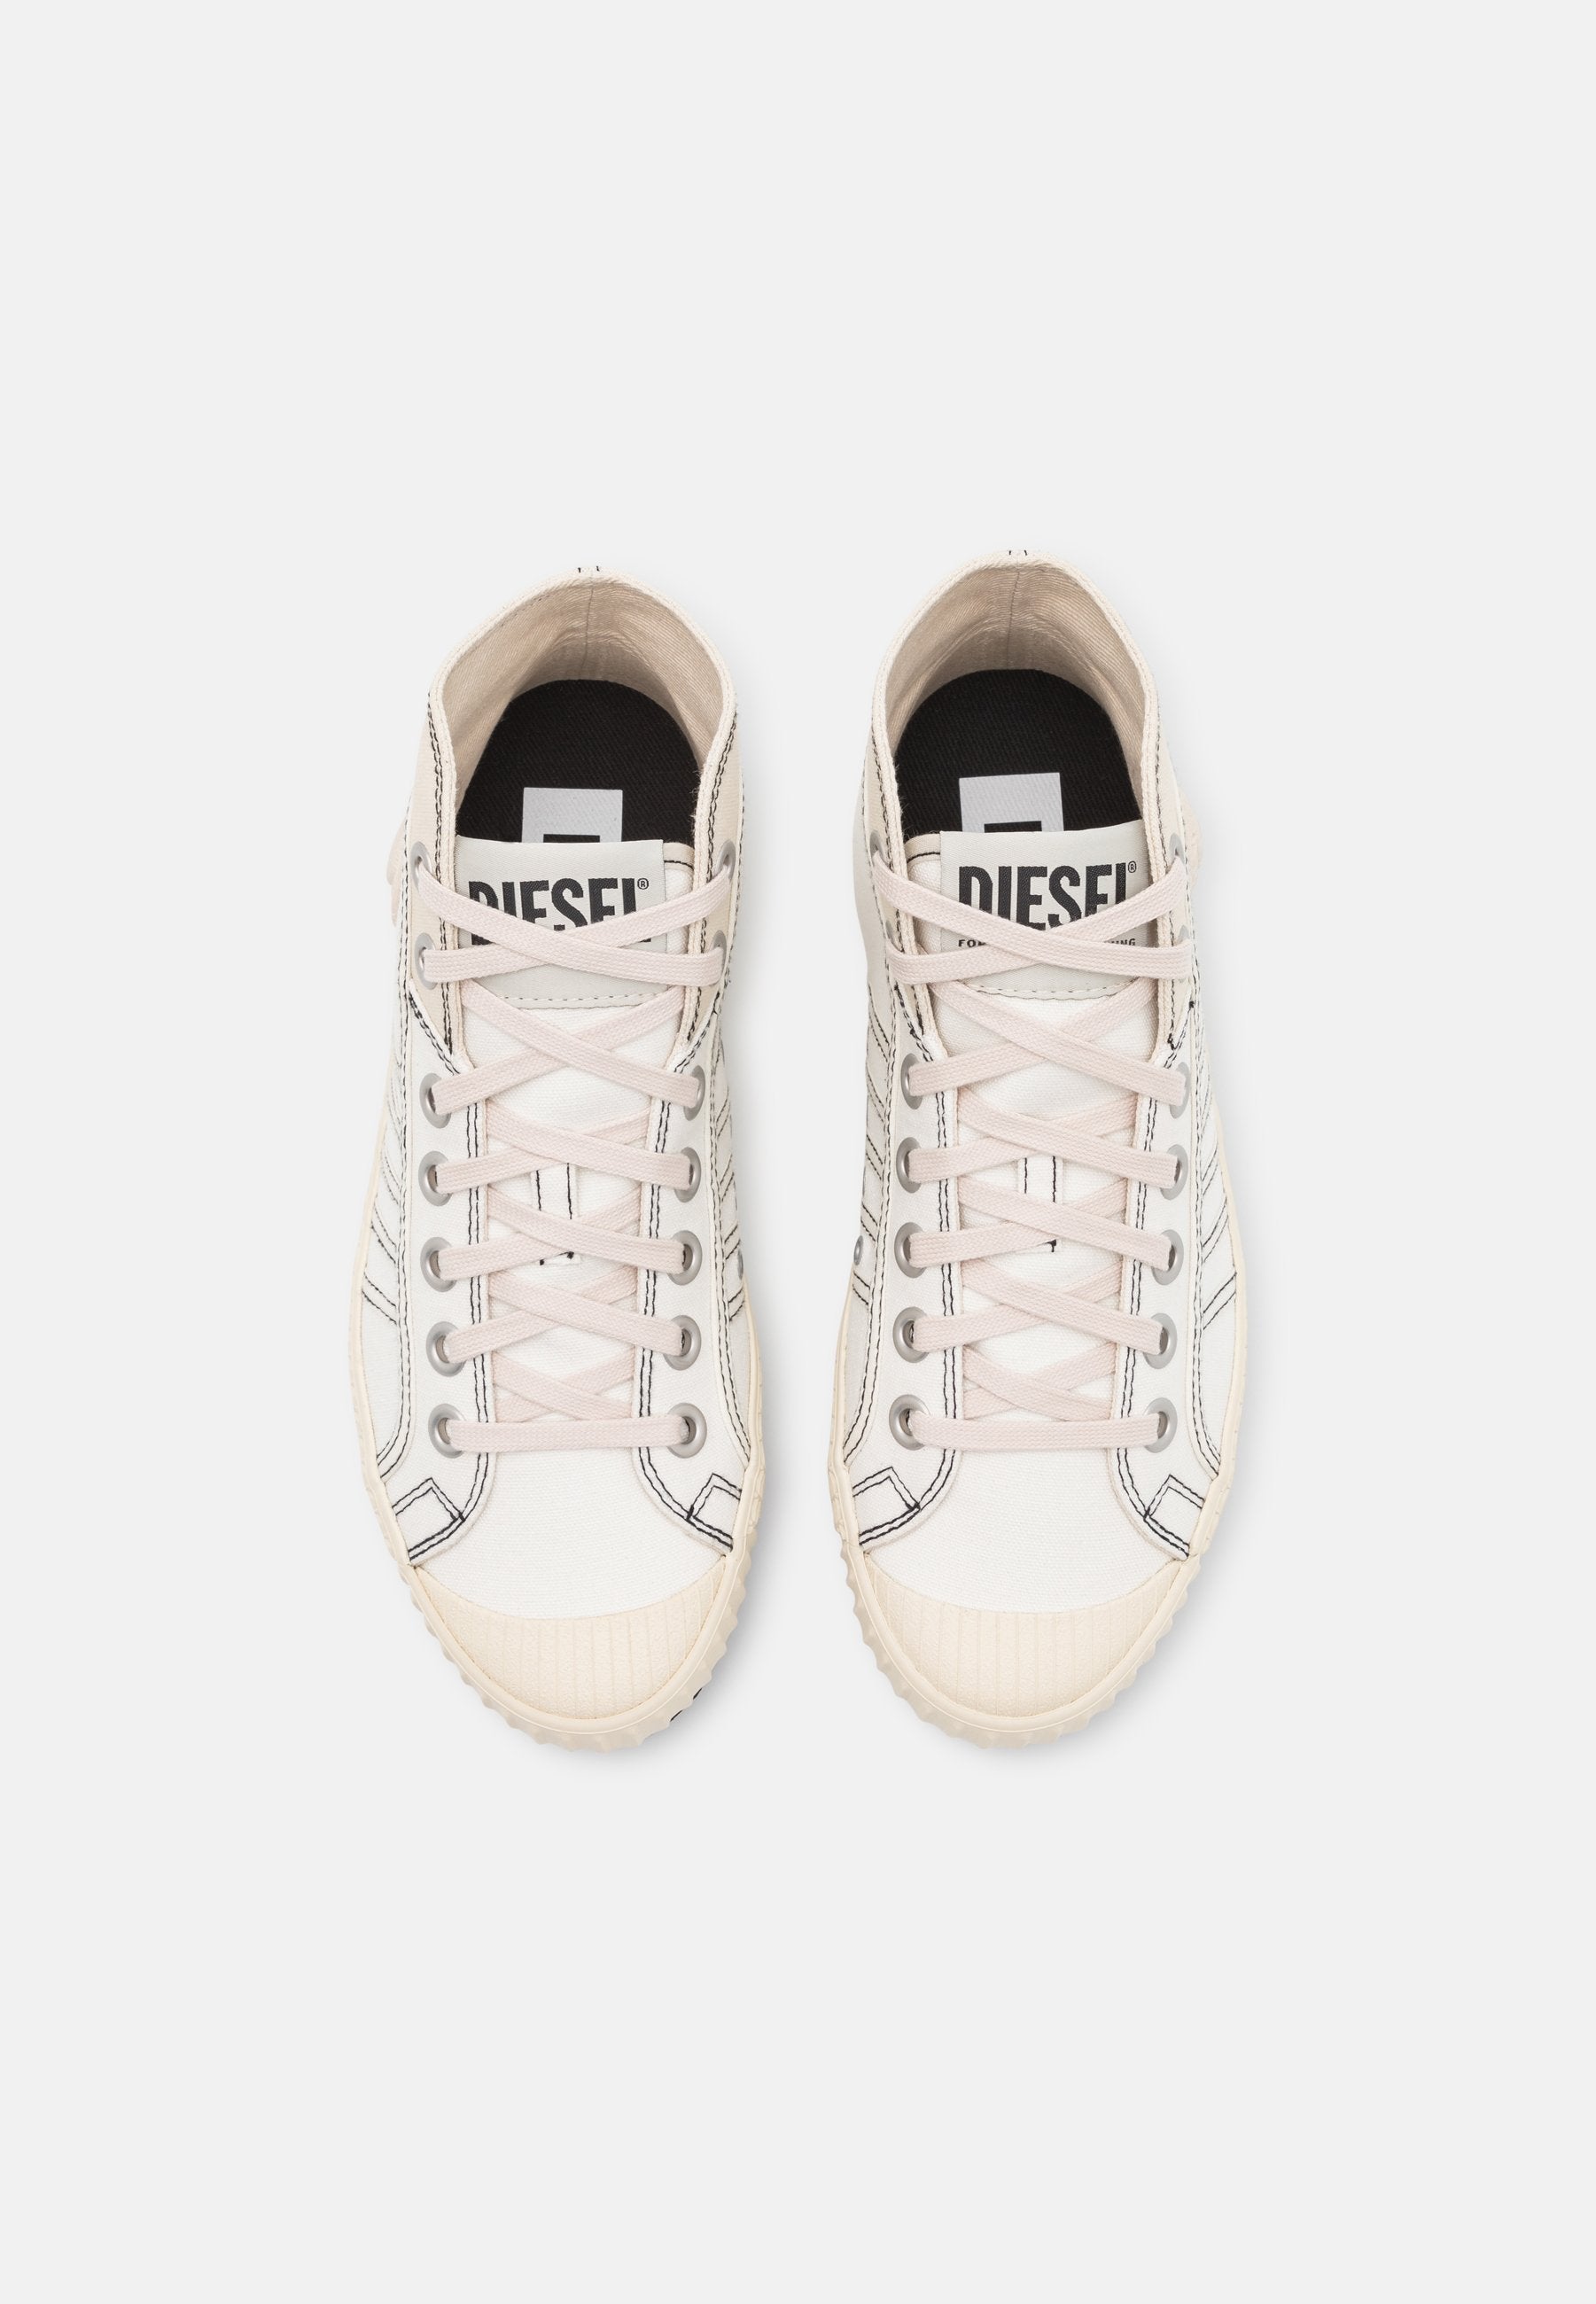 Diesel - S-Yuk MC W Sneakers - Birch White/Dirty White